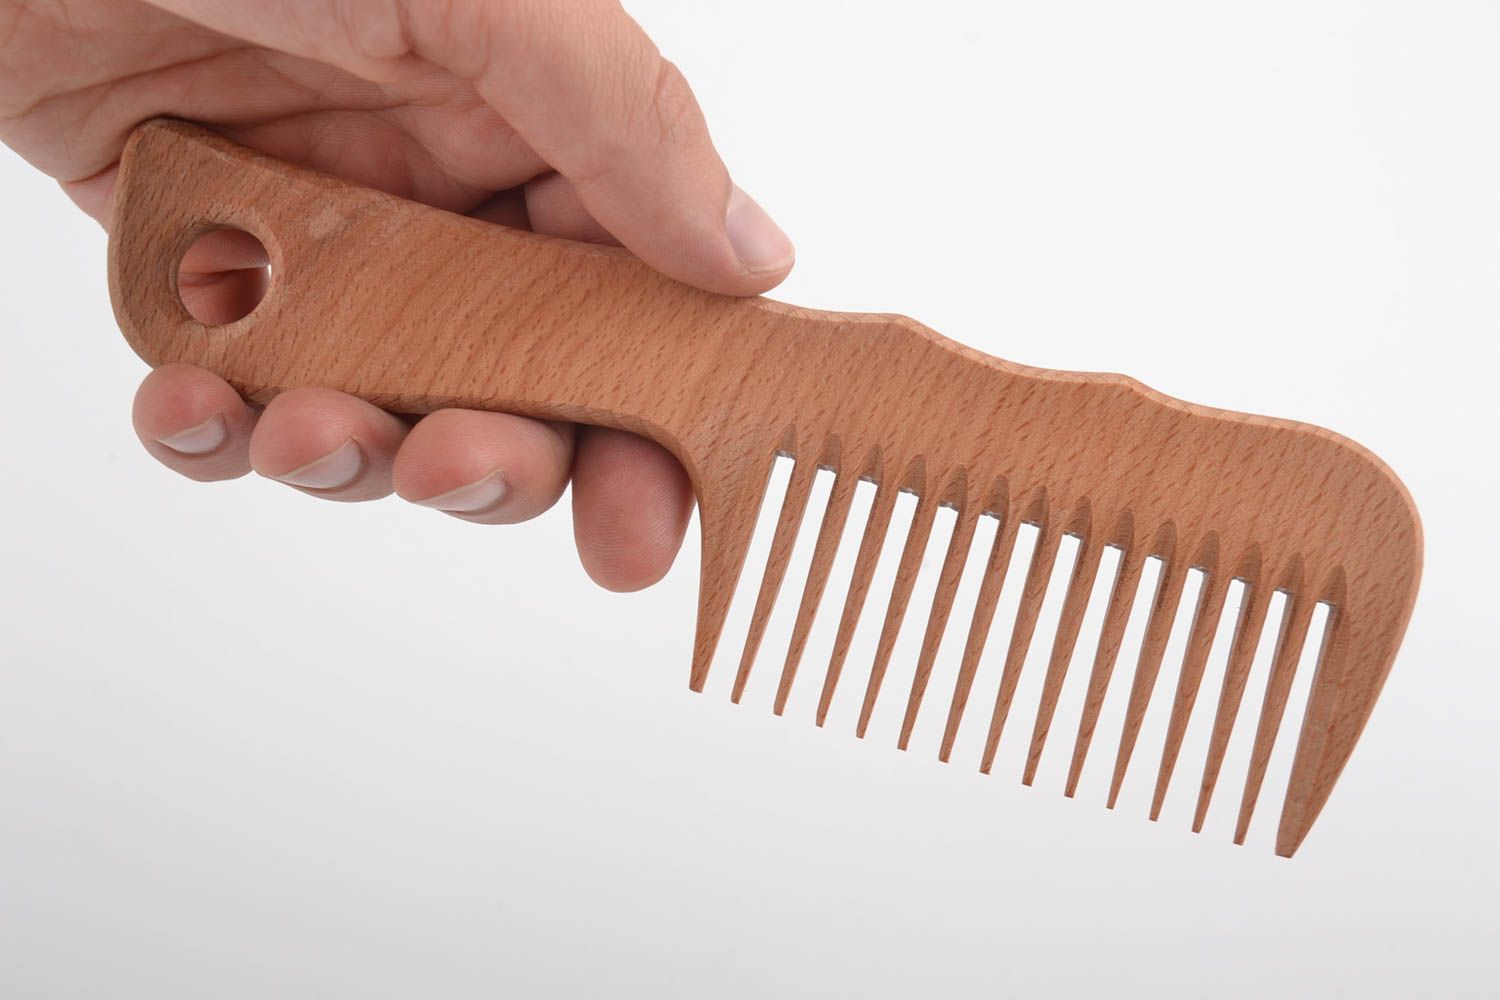 Деревянная расческа для волос натуральная узкая однорядная удобная ручной работы фото 2